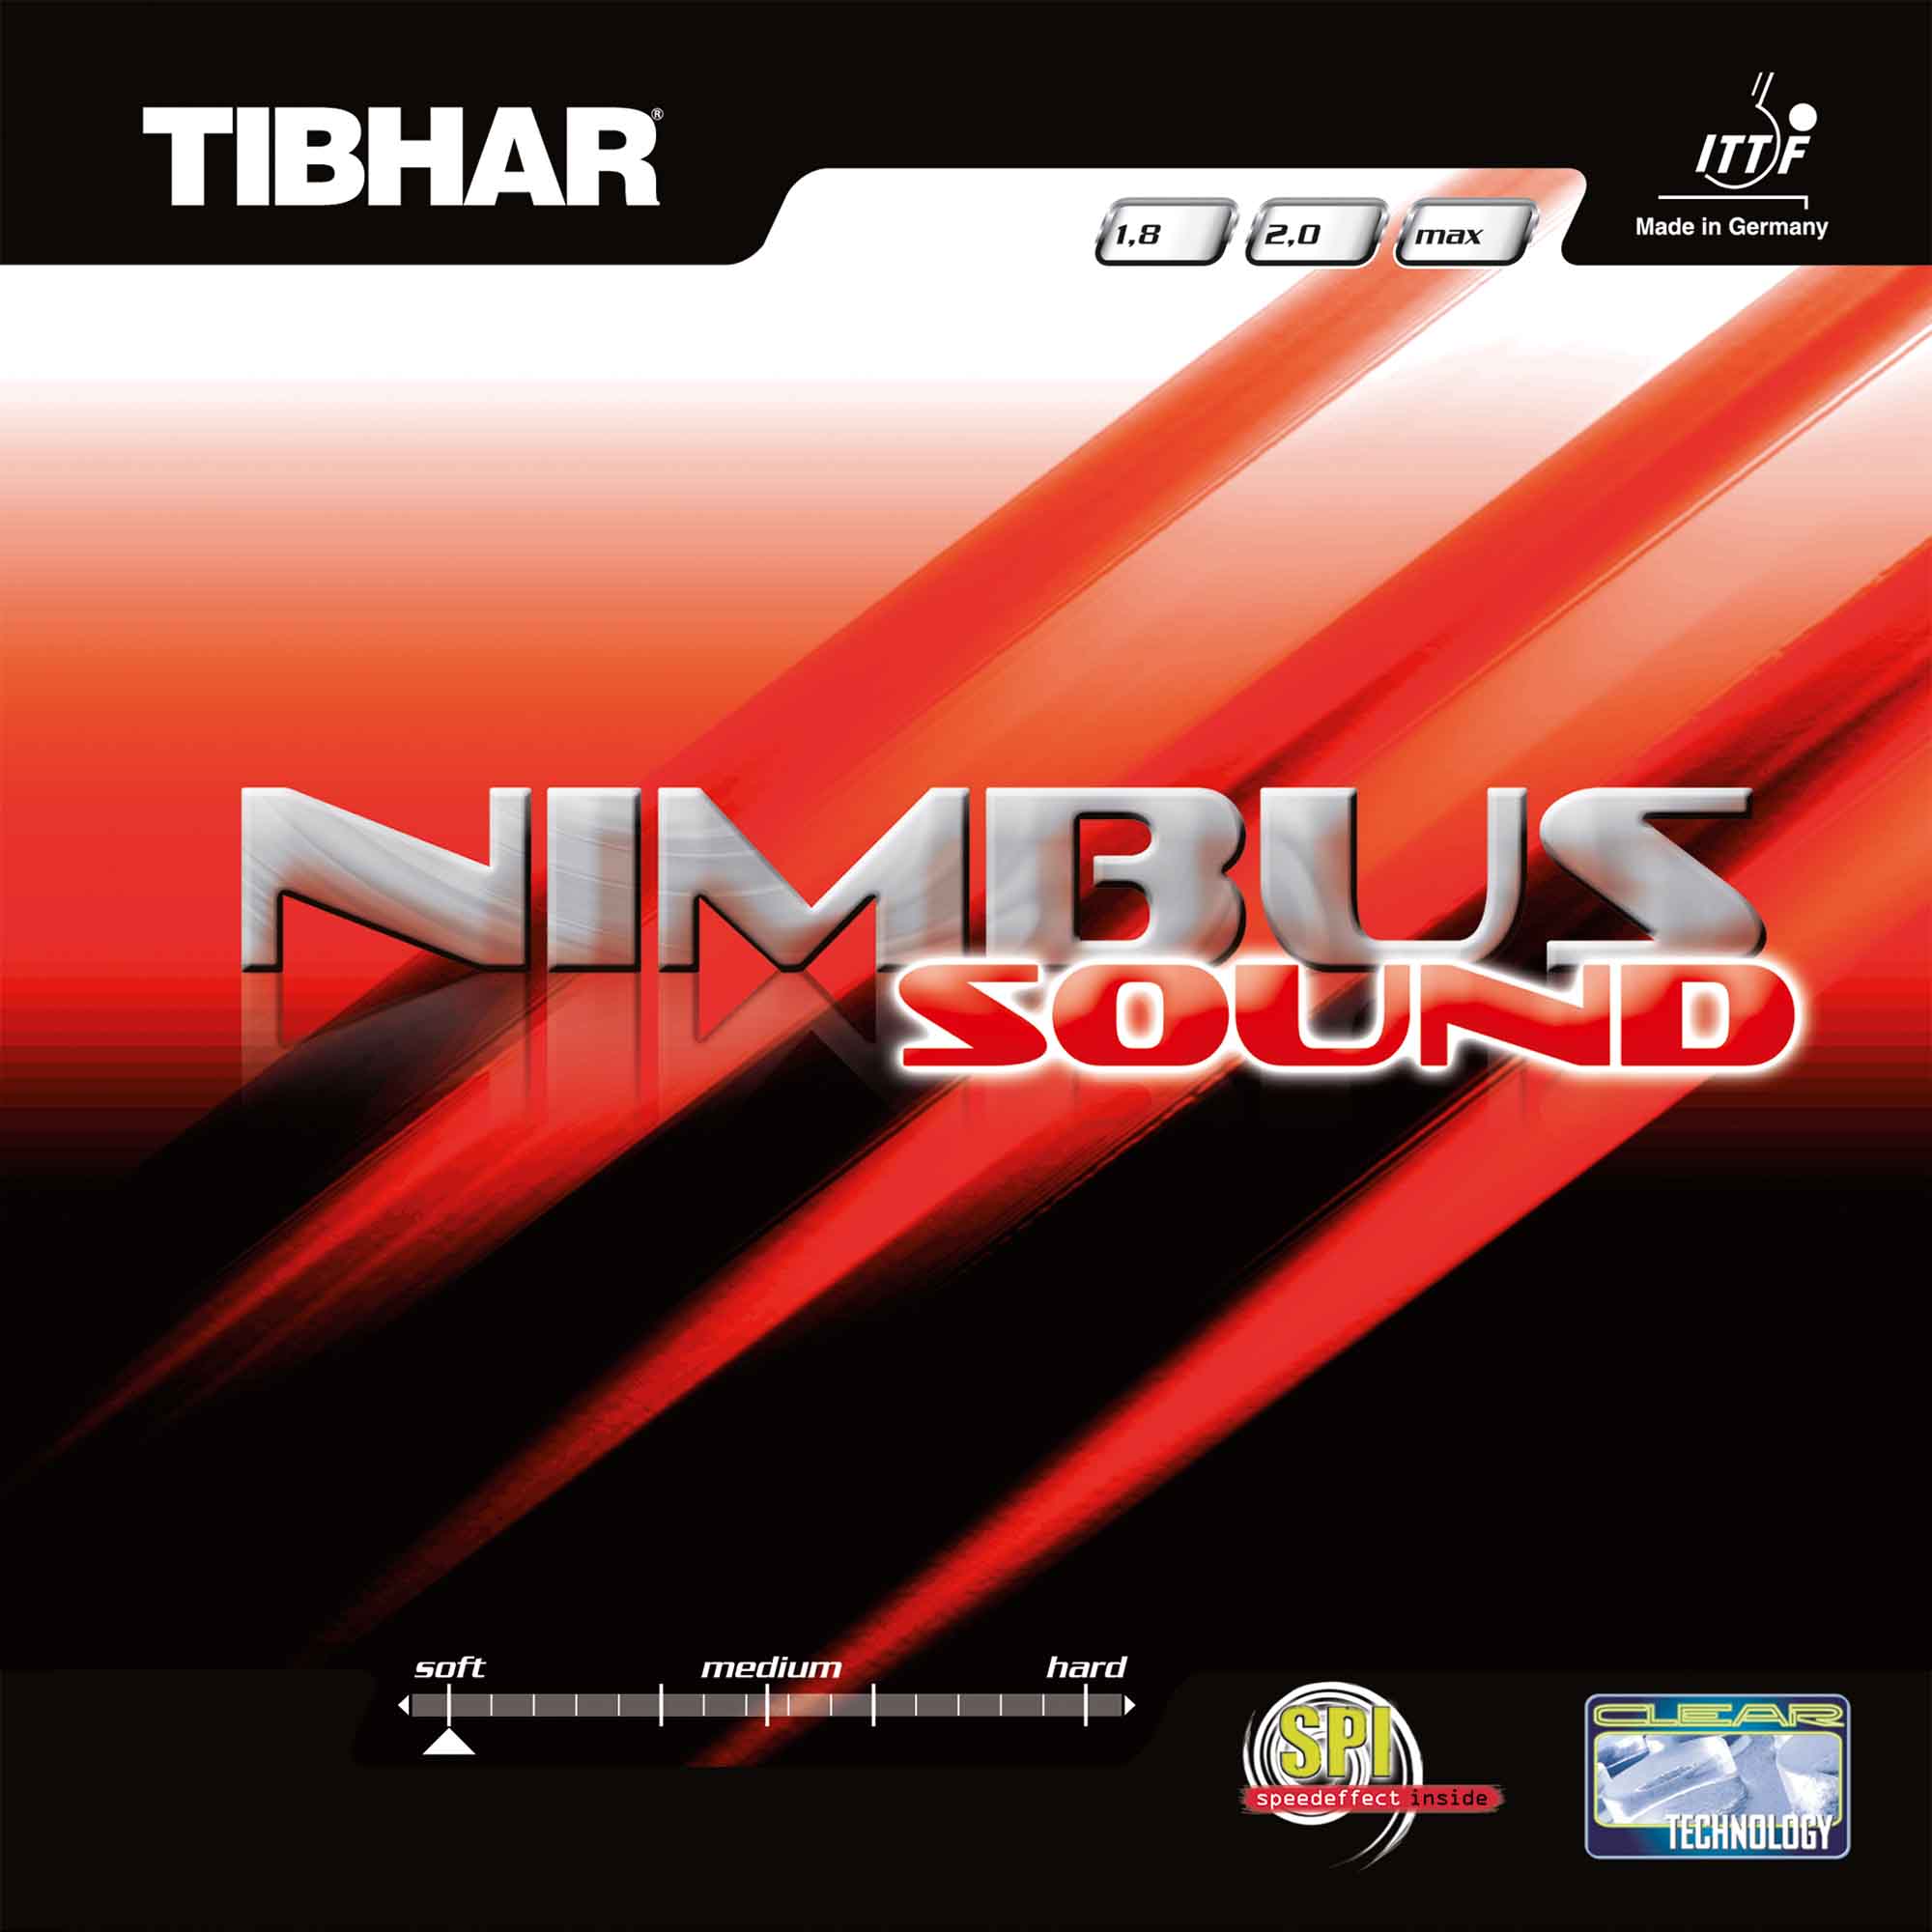 TIBHAR Nimbus Sound rot 1,8 mm